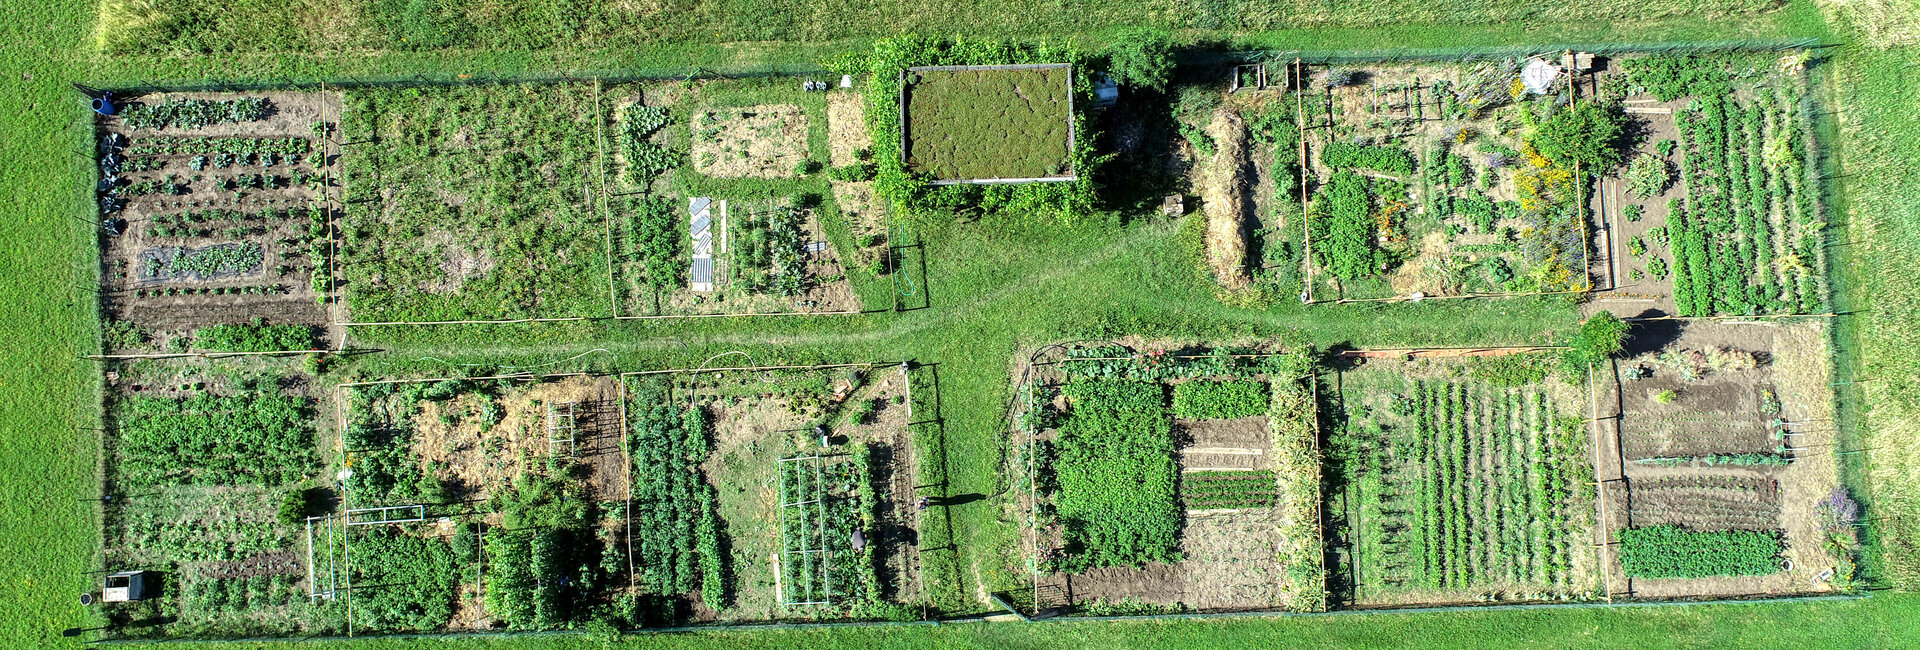 Jardins pour tous à Ménétrol dans le Puy-de-Dôme